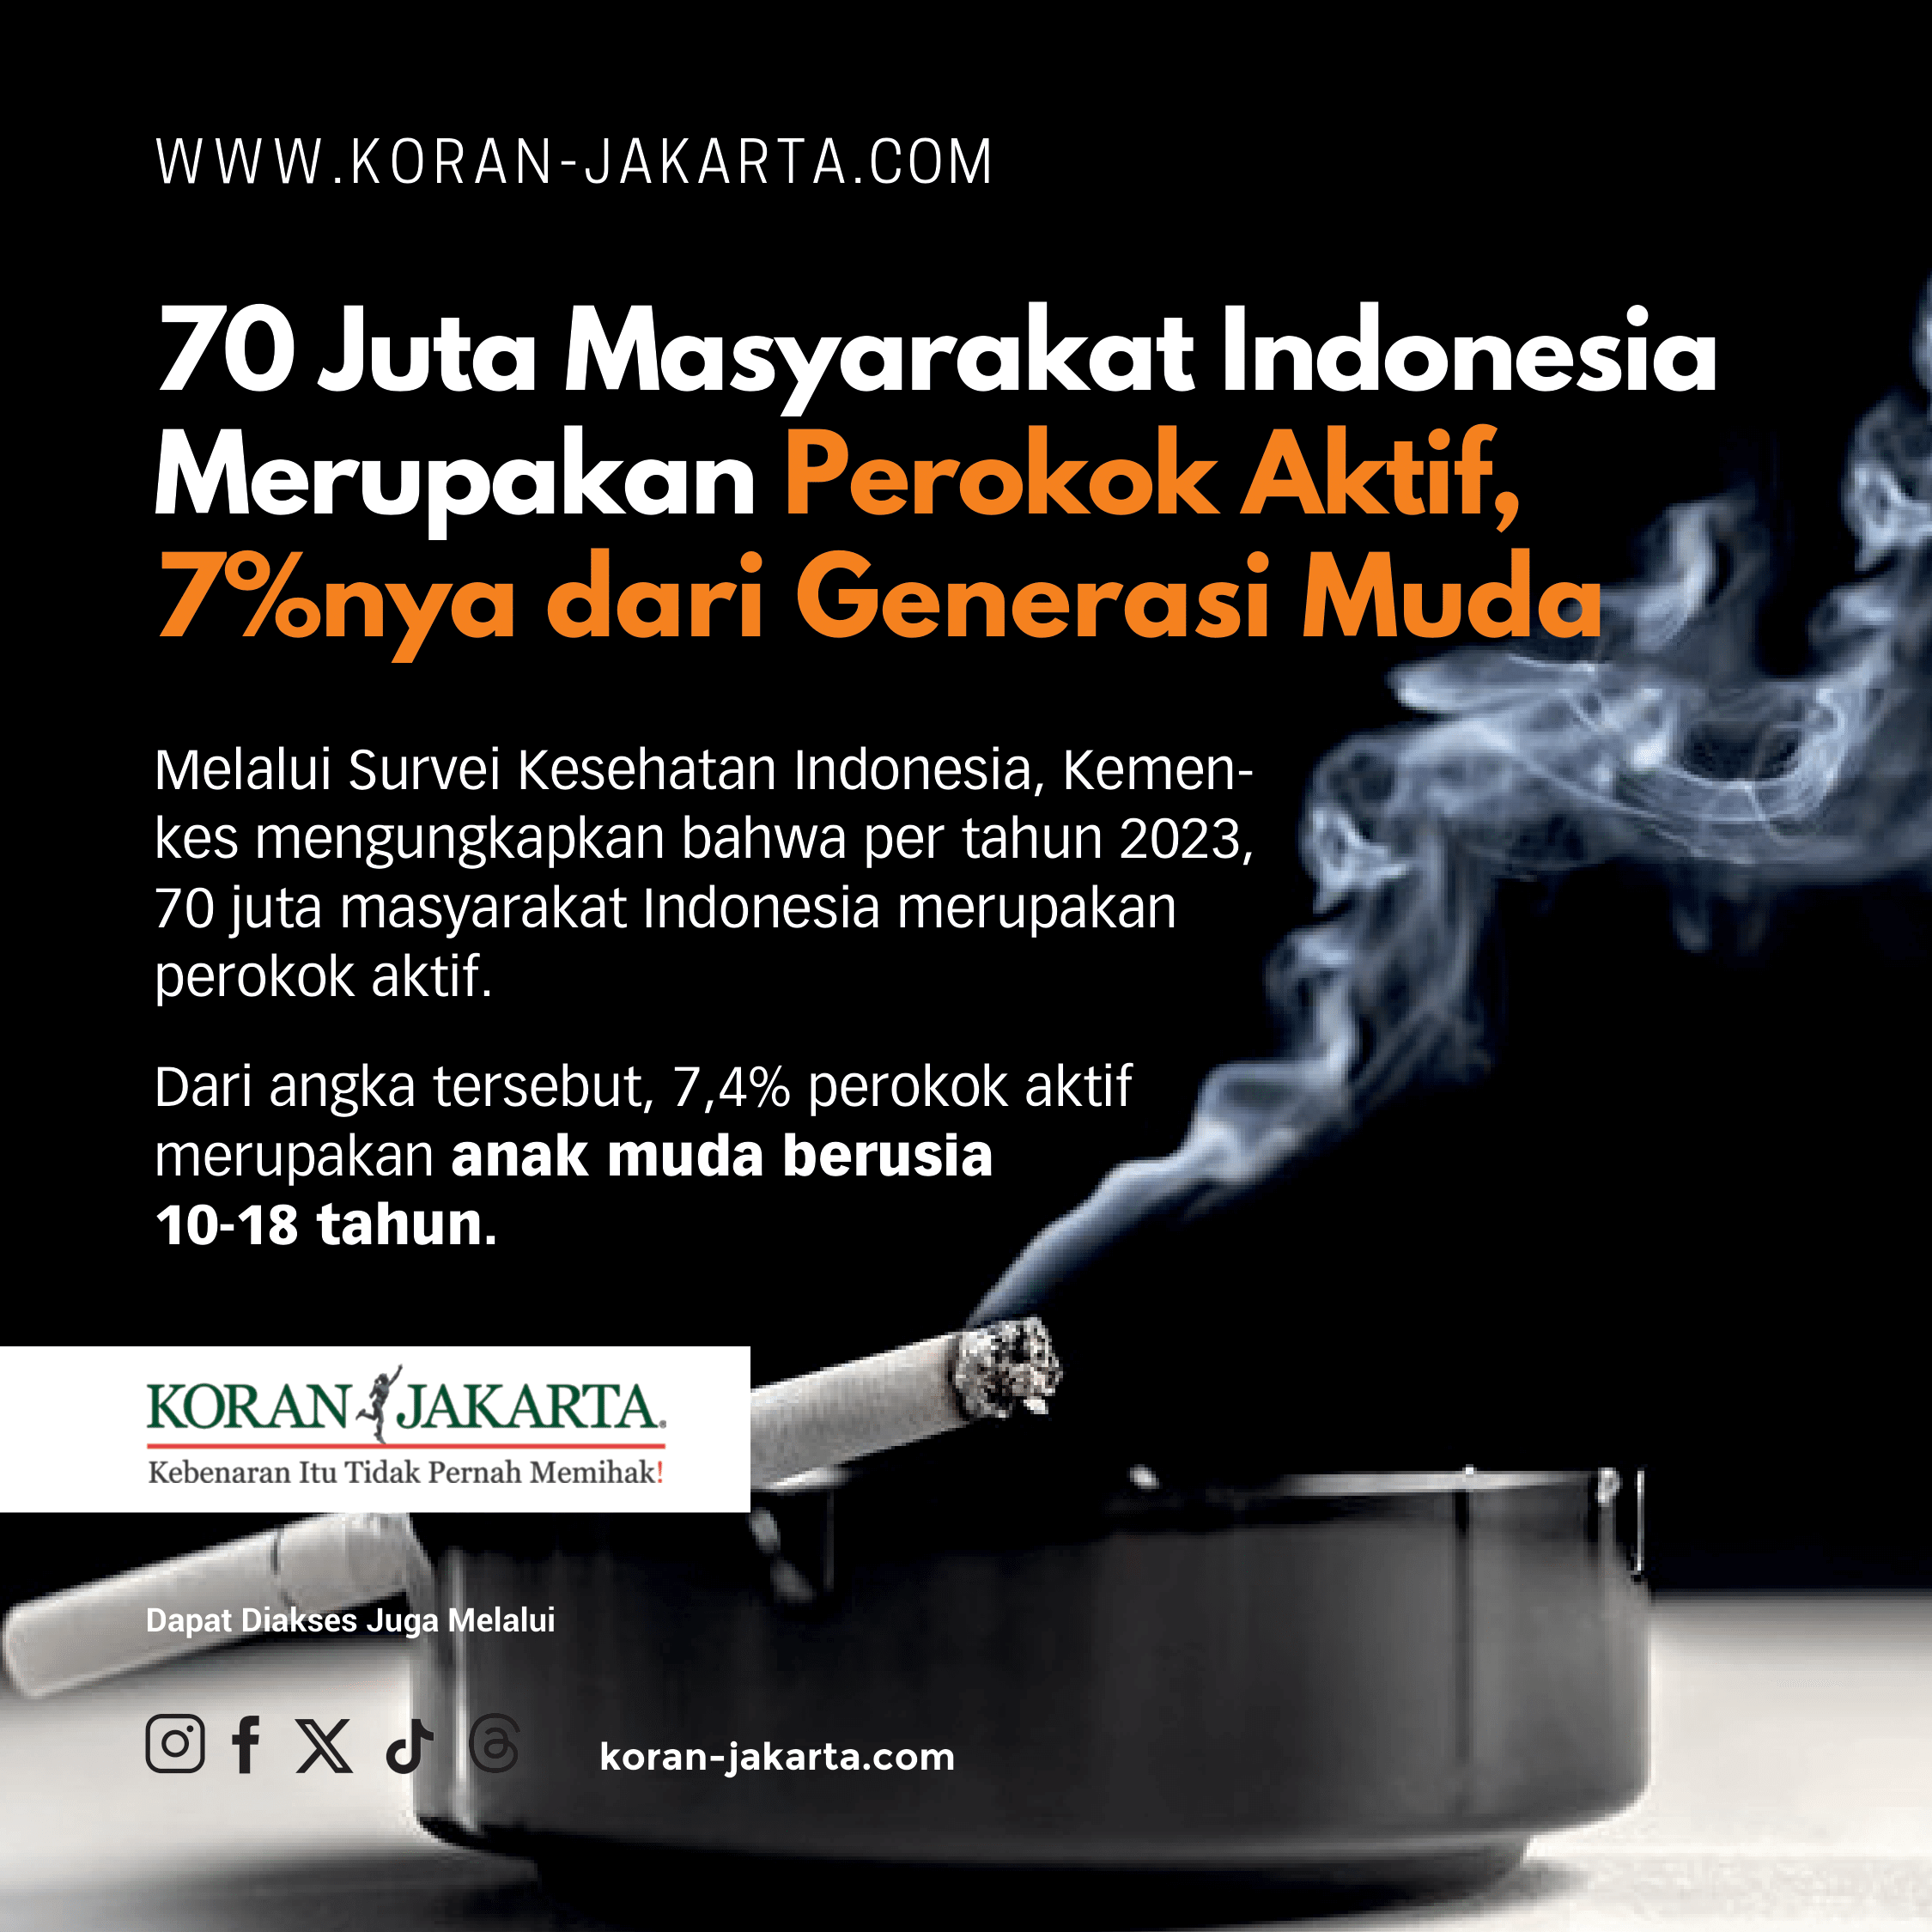 70 Juta Masyarakat Indonesia Merupakan Perokok Aktif, 7%nya Adalah Anak Muda!